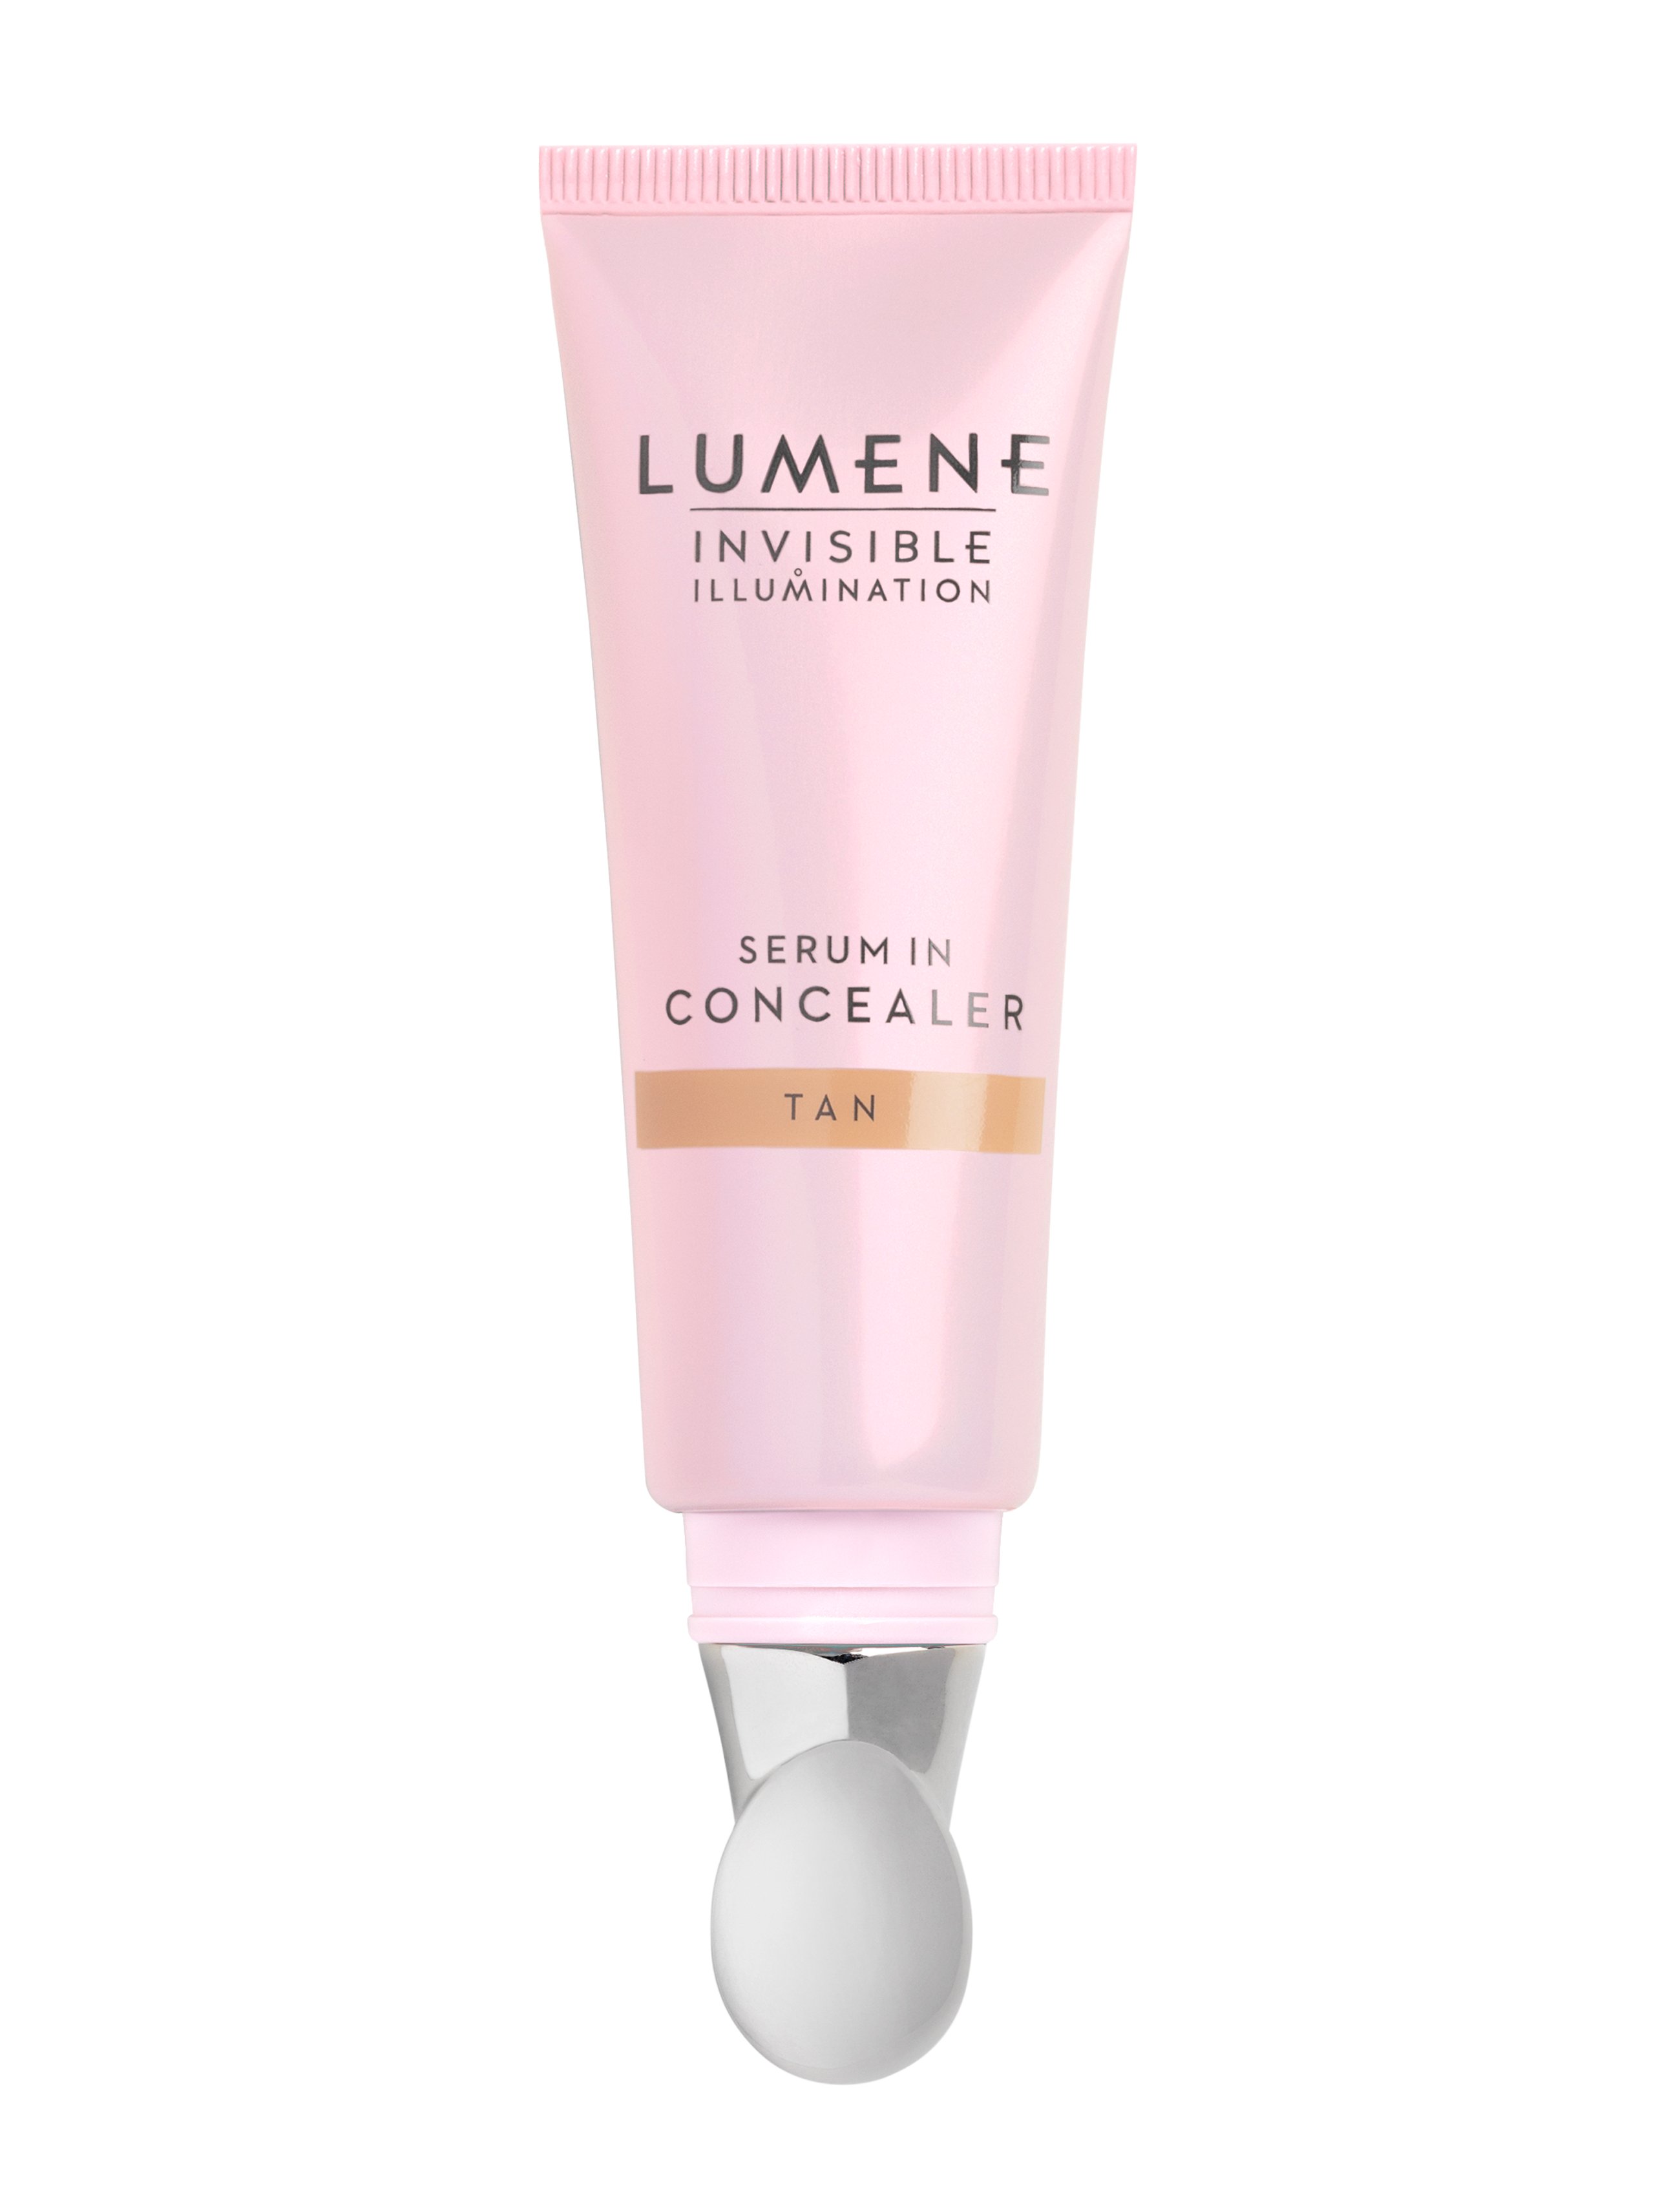 Lumene Invisible Illumination Serum In Concealer, Tan, 10 ml